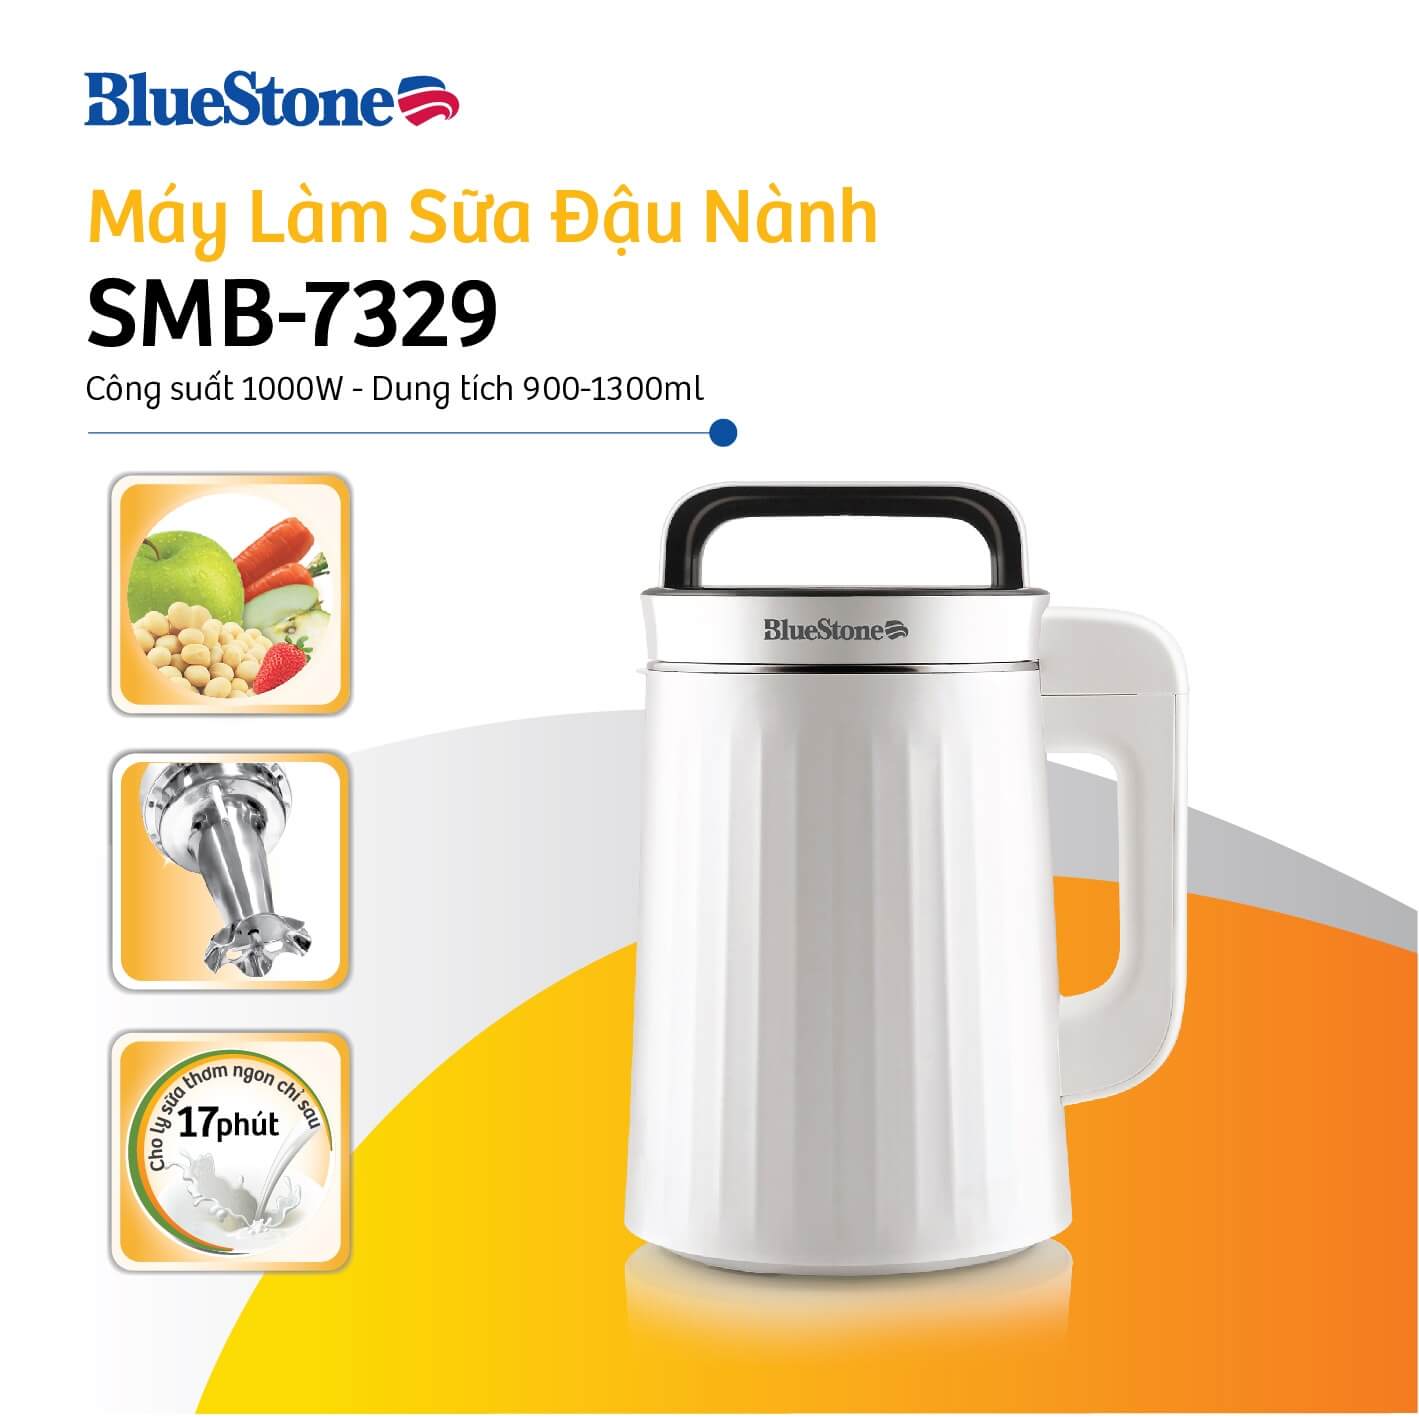 Máy Làm Sữa Đậu Nành Bluestone SMB-7329 (1.3 Lít)1